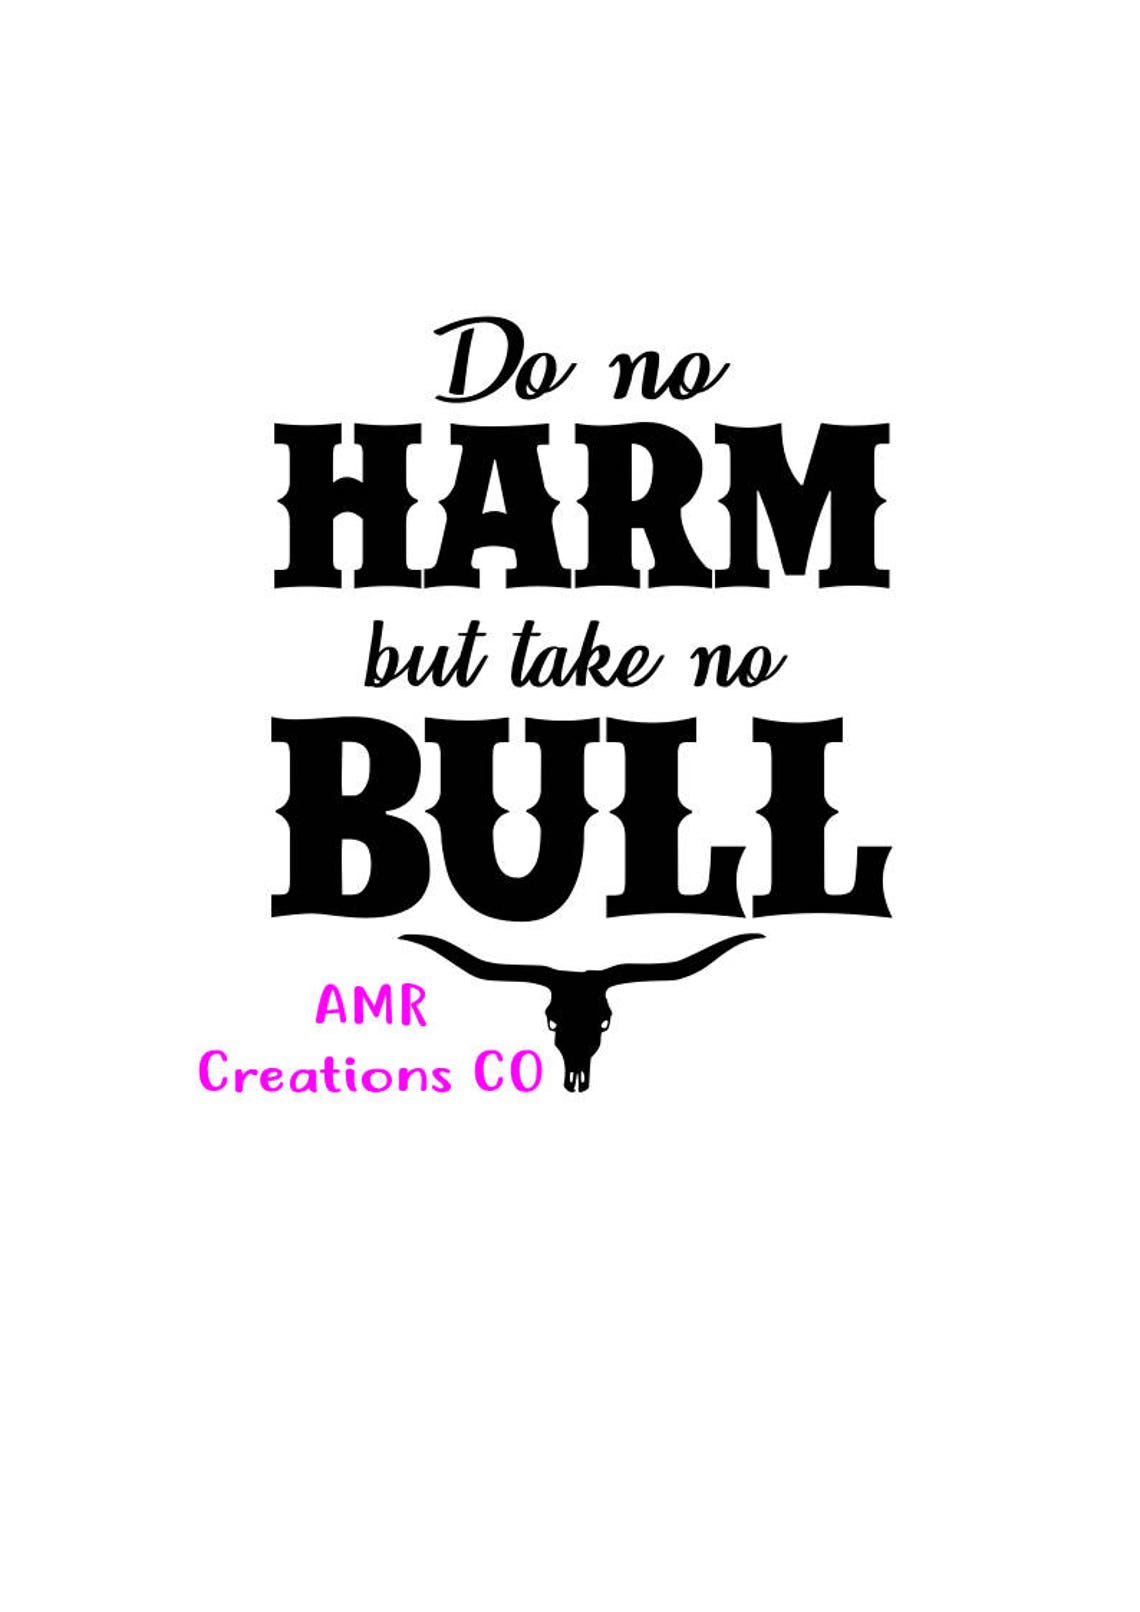 do no harm but take no bull